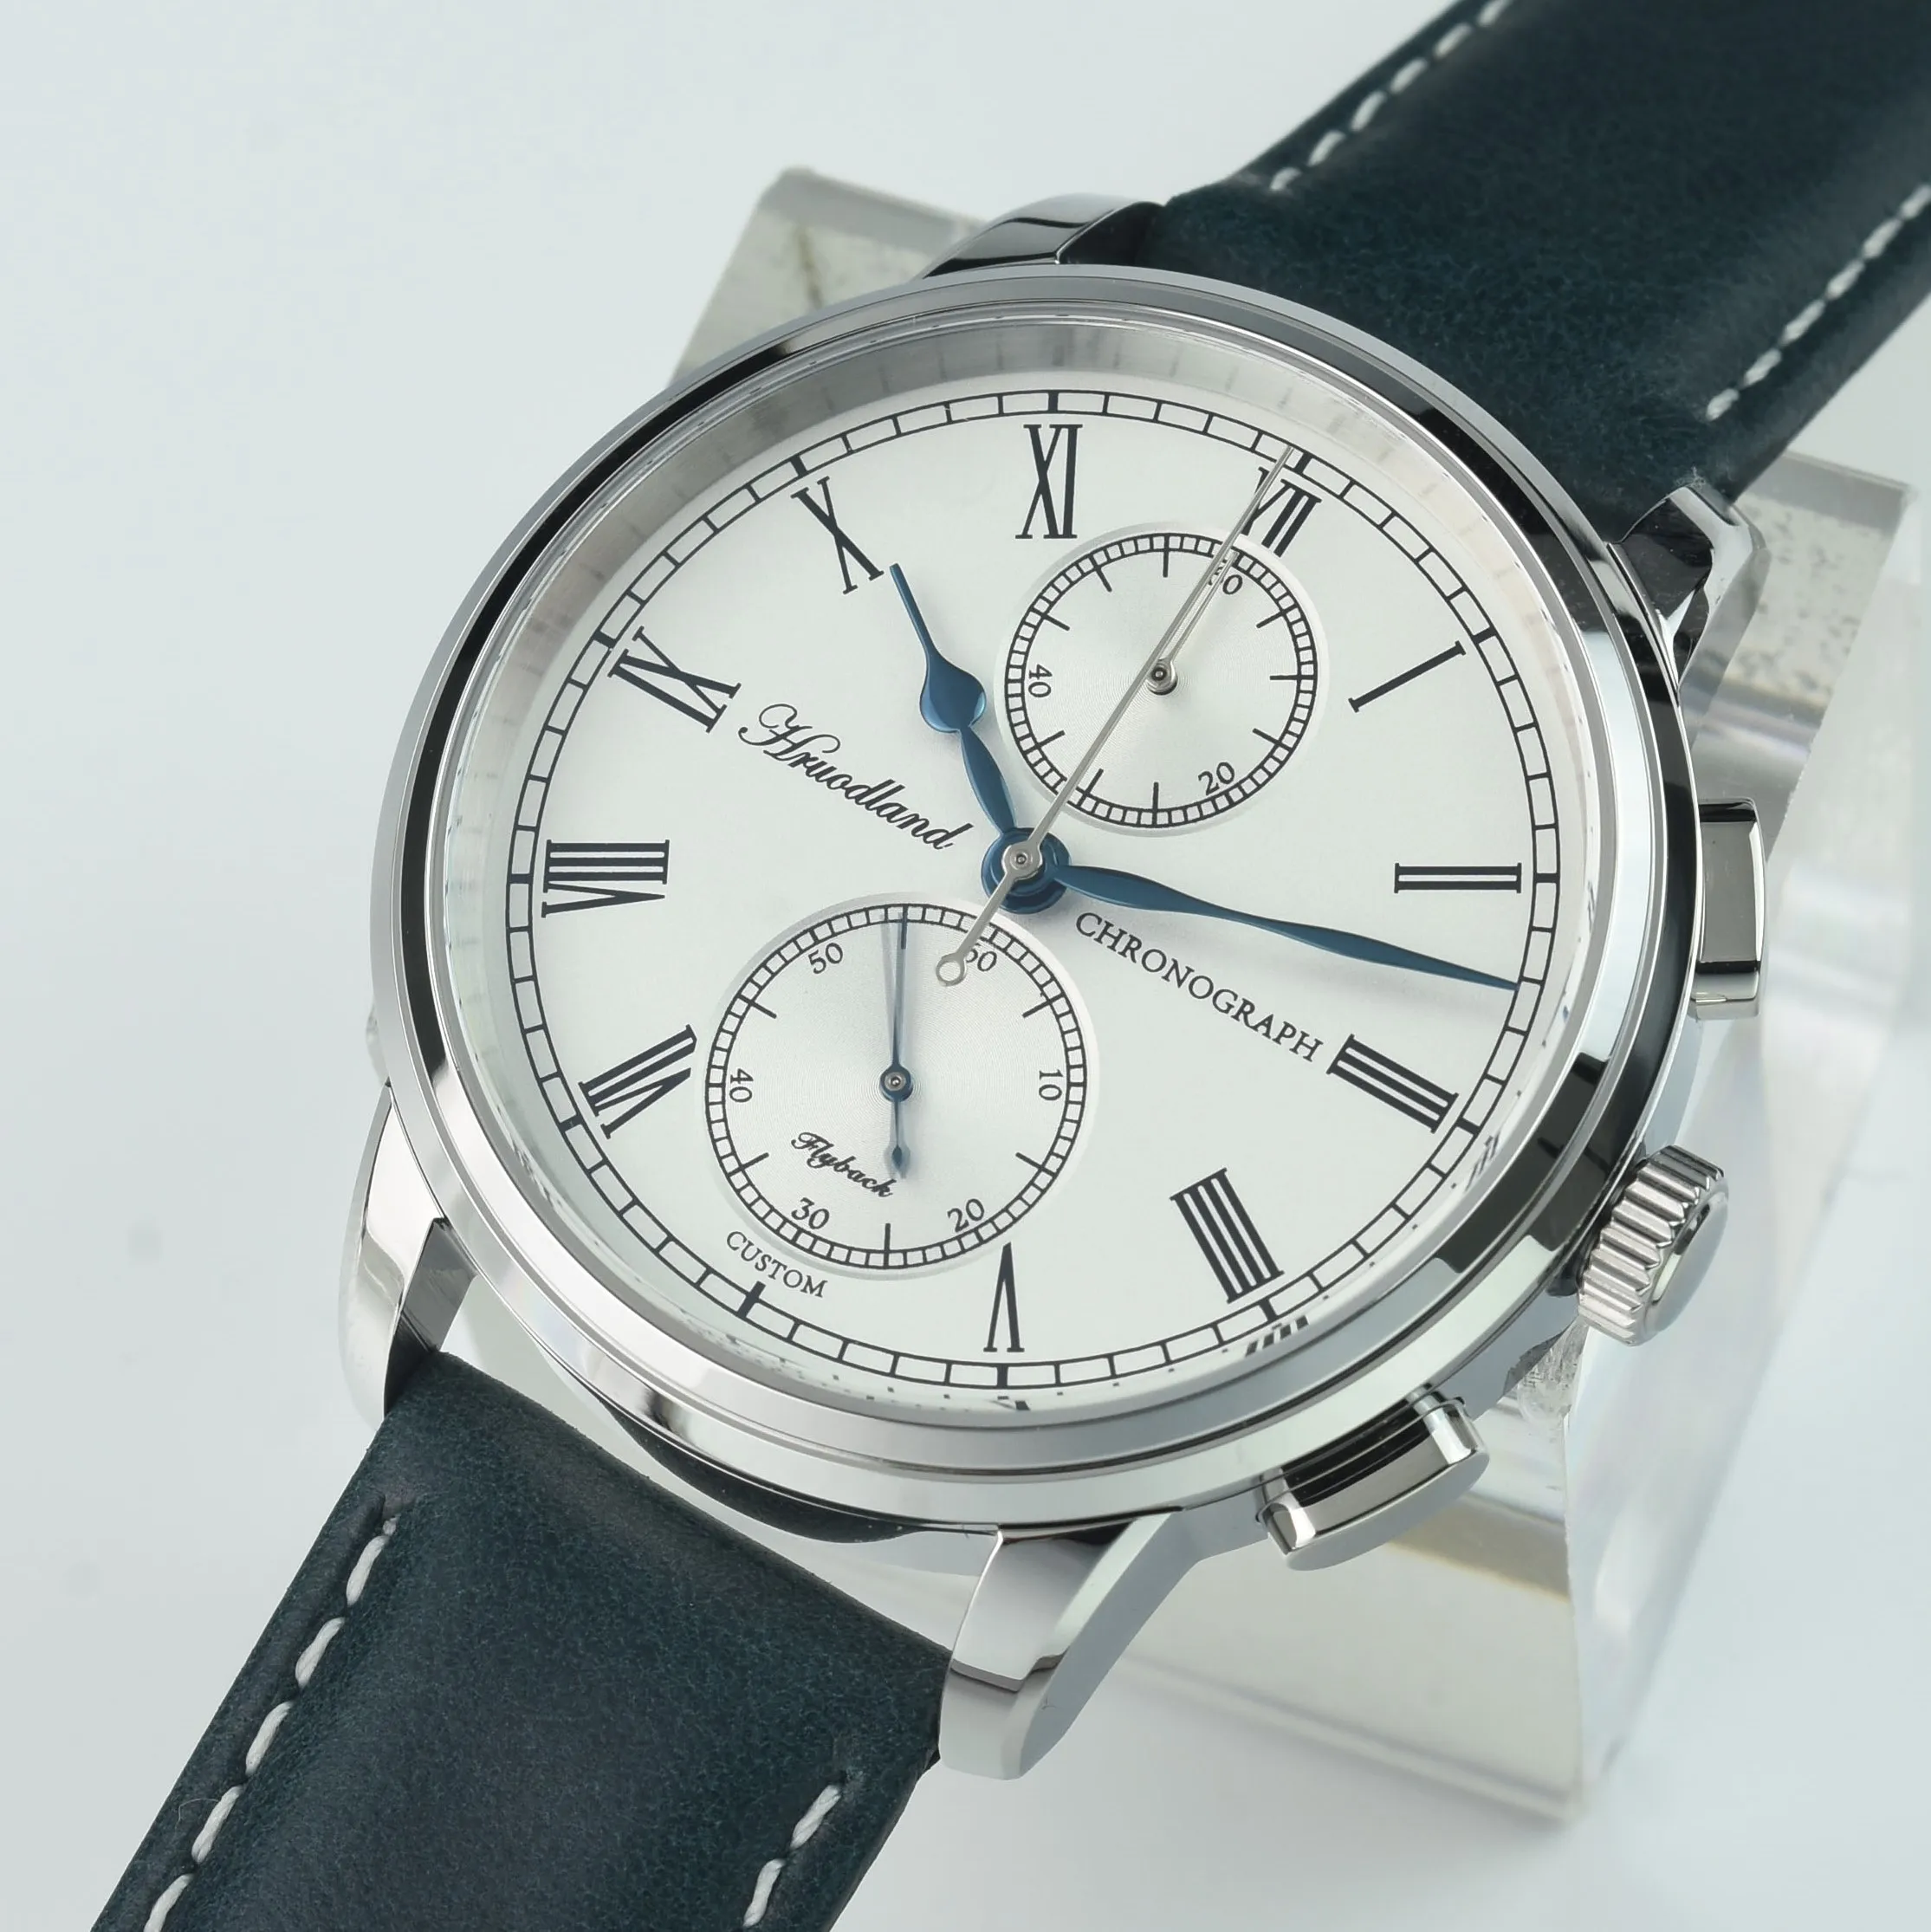 

Hruodland G004 Мужские кварцевые часы в стиле ретро с хронографом VK61 мужские спортивные часы из нержавеющей стали с сапфировым стеклом деловые часы Wrsiwatch с кожаным ремешком